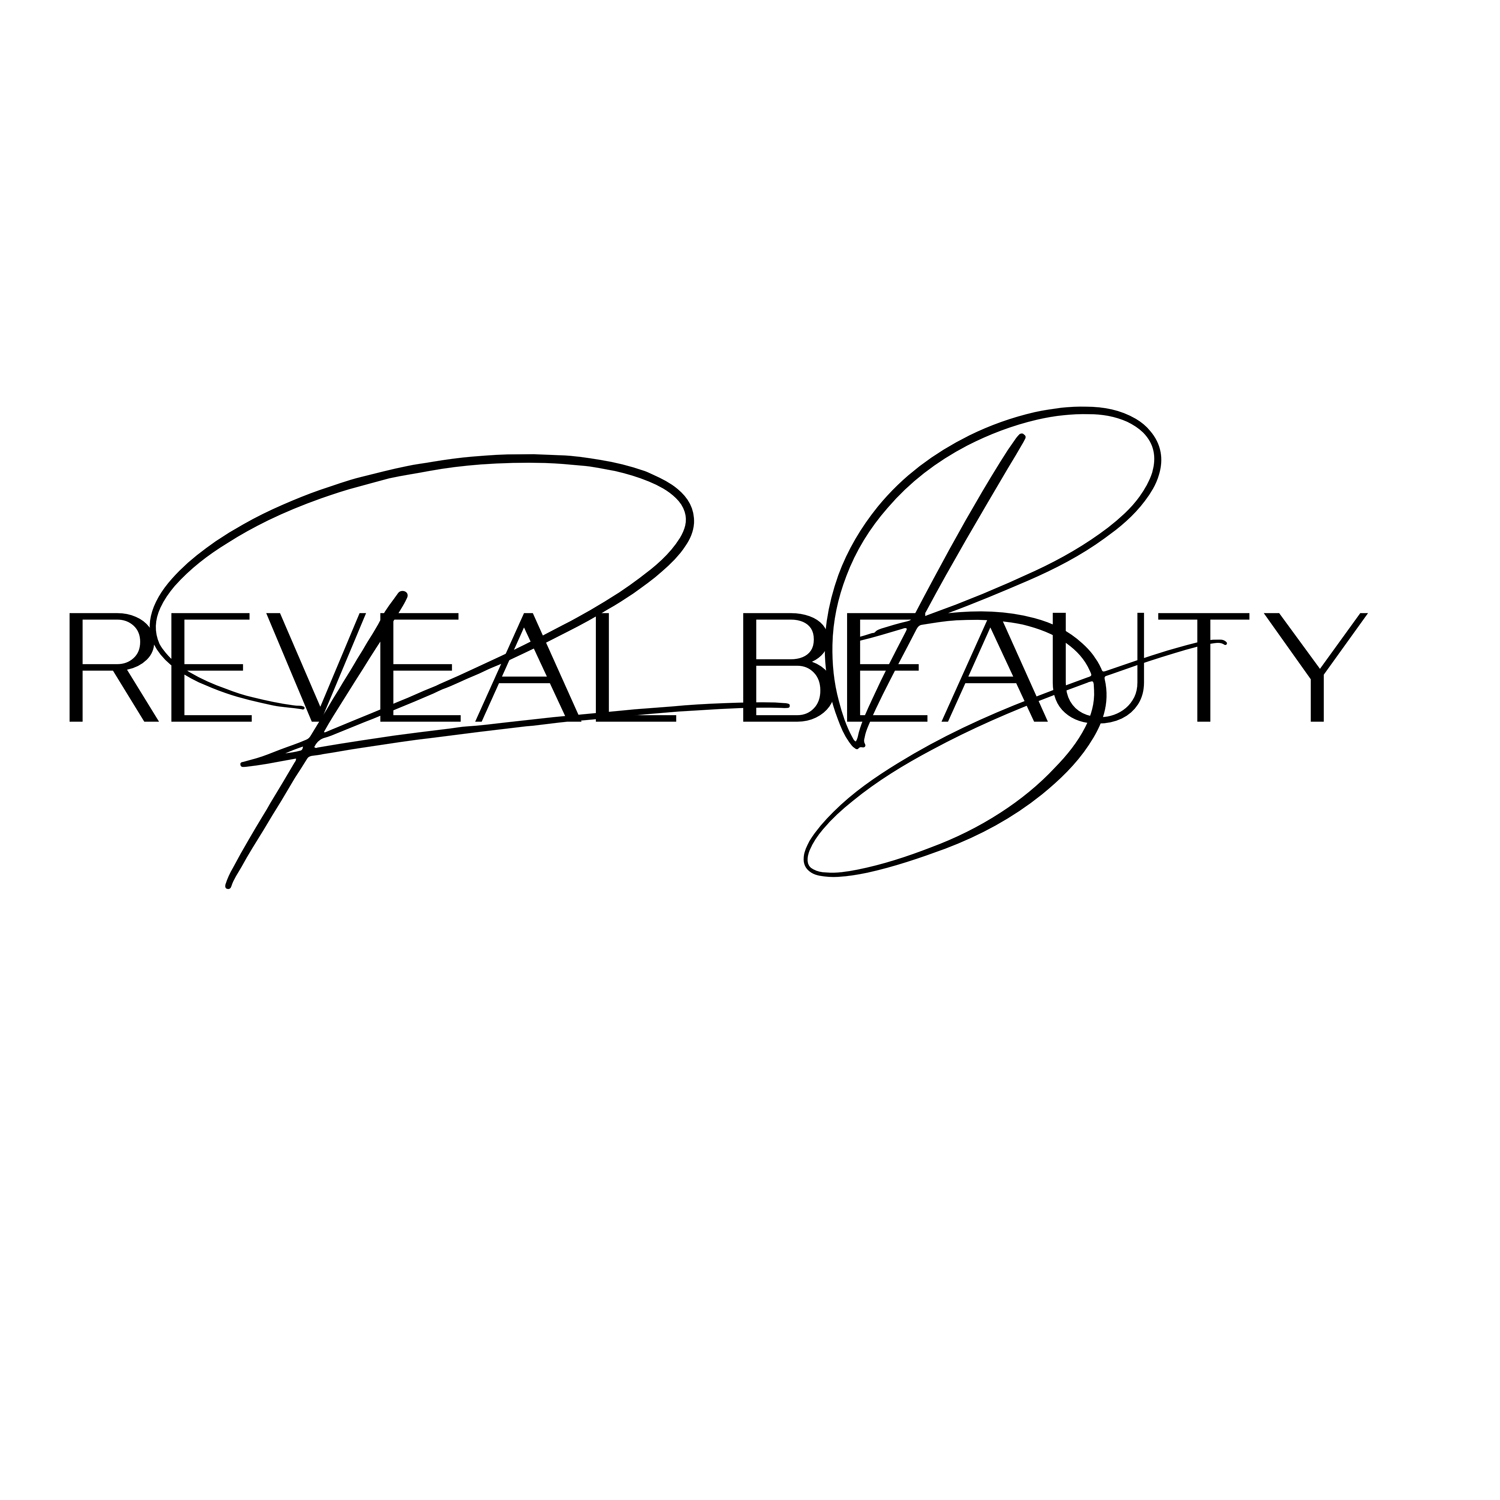 Reveal Beauty